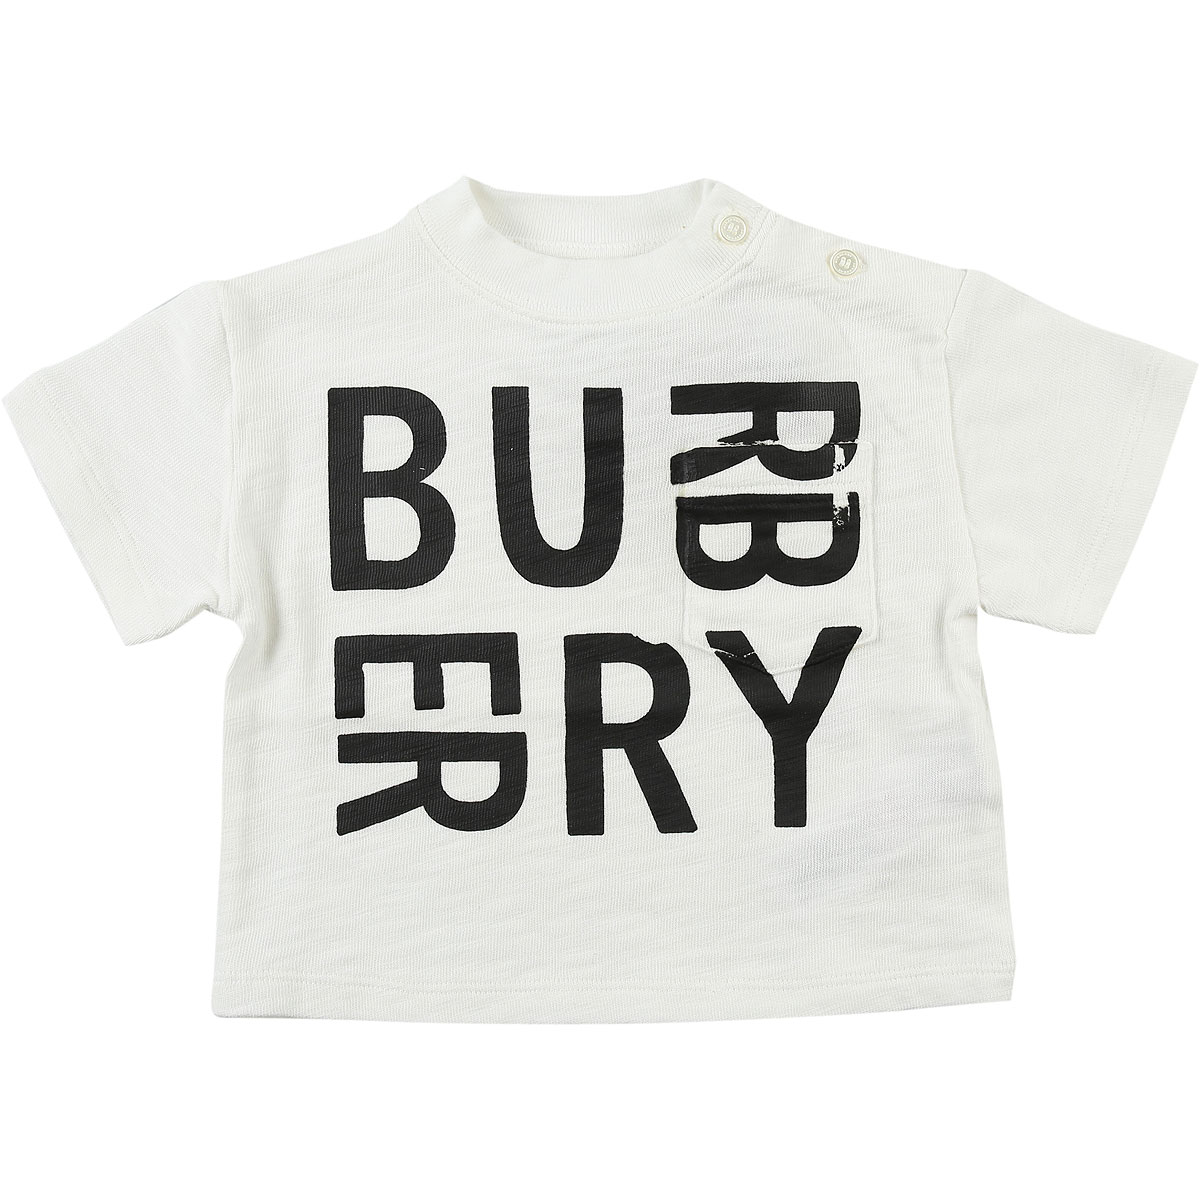 Burberry Baby T-Shirt für Jungen Günstig im Outlet Sale, Weiss, Baumwolle, 2017, 12 M 18M 2Y 6M